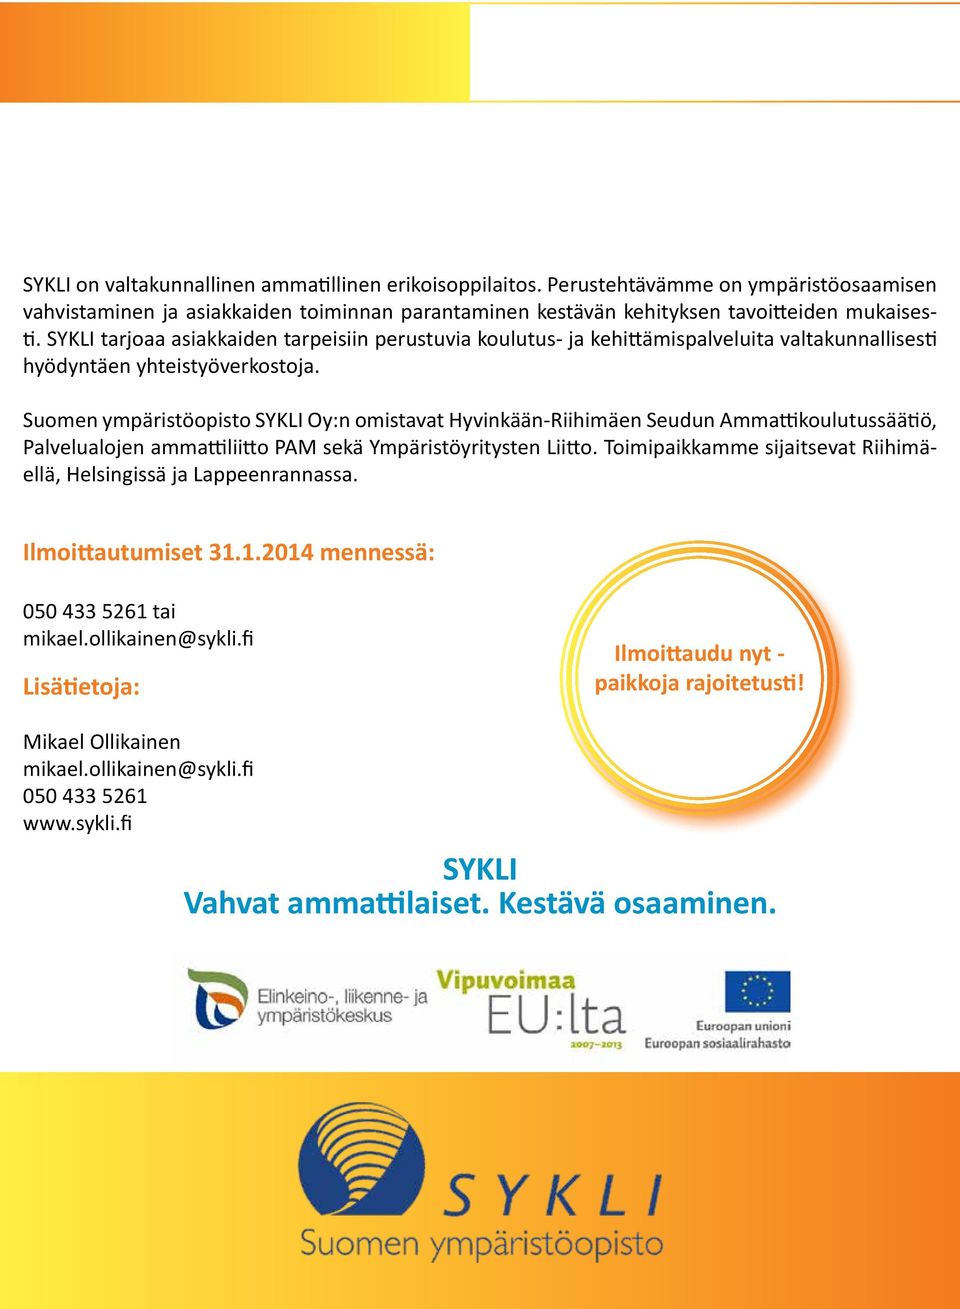 Suomen ympäristöopisto SYKLI Oy:n omistavat Hyvinkään-Riihimäen Seudun Ammattikoulutussäätiö, Palvelualojen ammattiliitto PAM sekä Ympäristöyritysten Liitto.